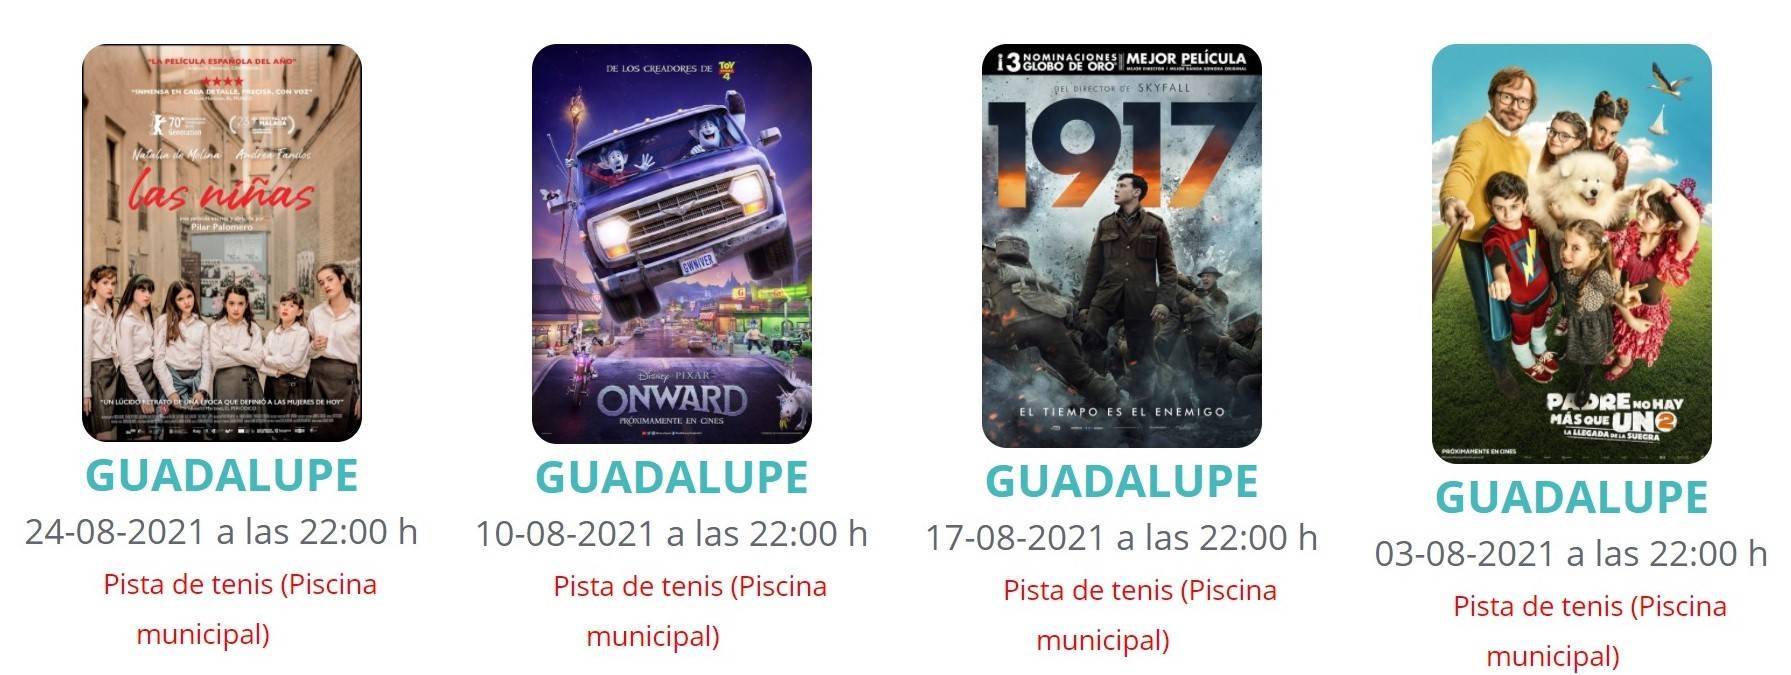 Cine de verano (2021) - Guadalupe (Cáceres)